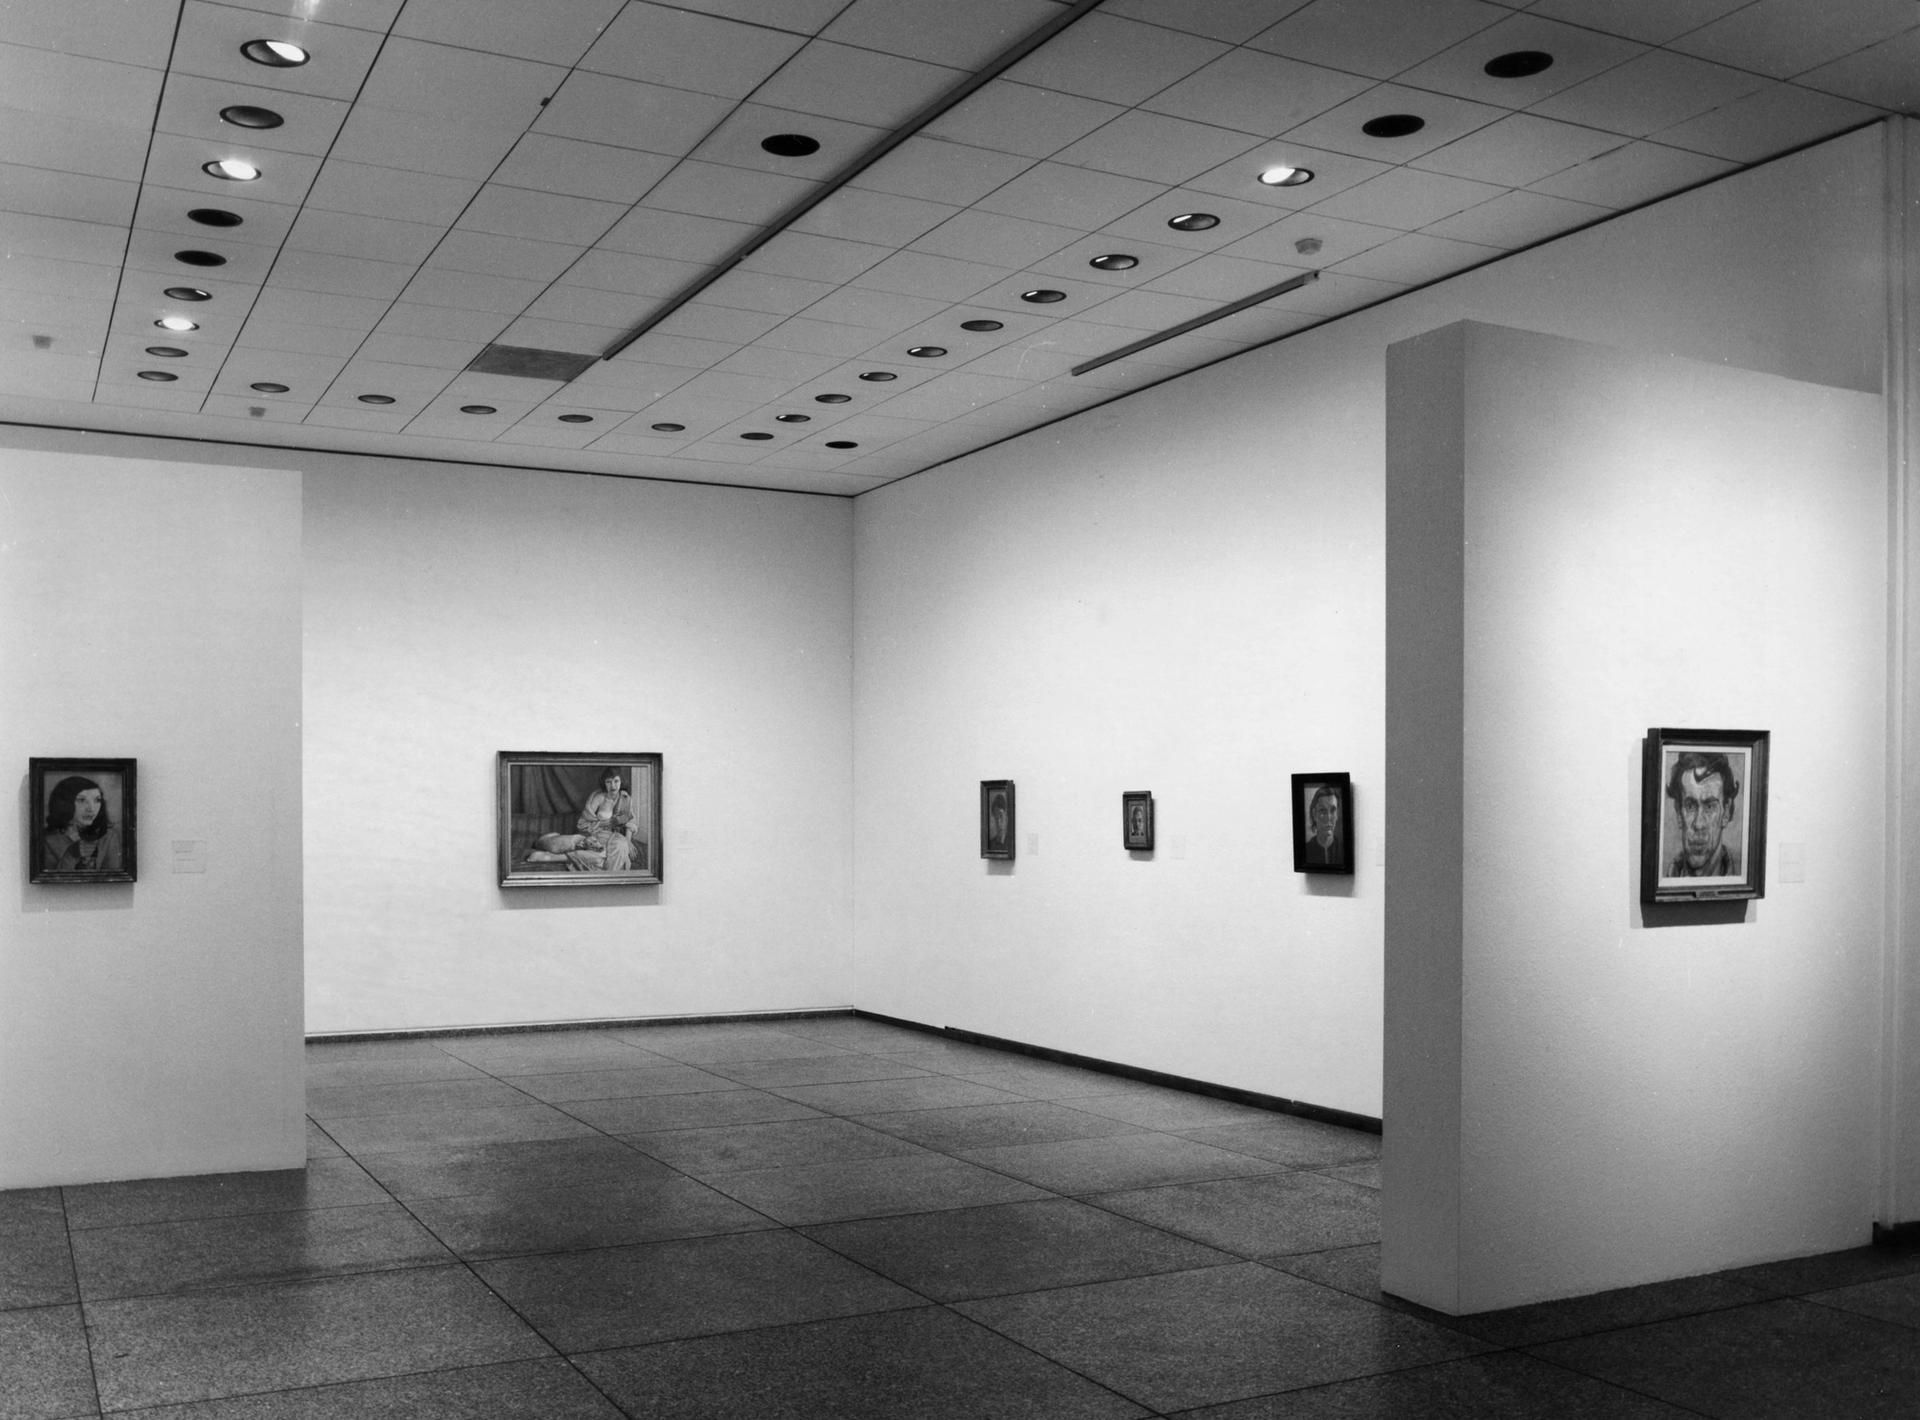 תמונת התערוכה שצולמה ביום בו נגנב דיוקנו של לוסיין פרויד של פרנסיס בייקון (רביעי משמאל) מתערוכתו ב"נאי נשיונל גאלרי" בברלין 

© bpk / Nationalgalerie, SMB / ריינהרד פרידריך


